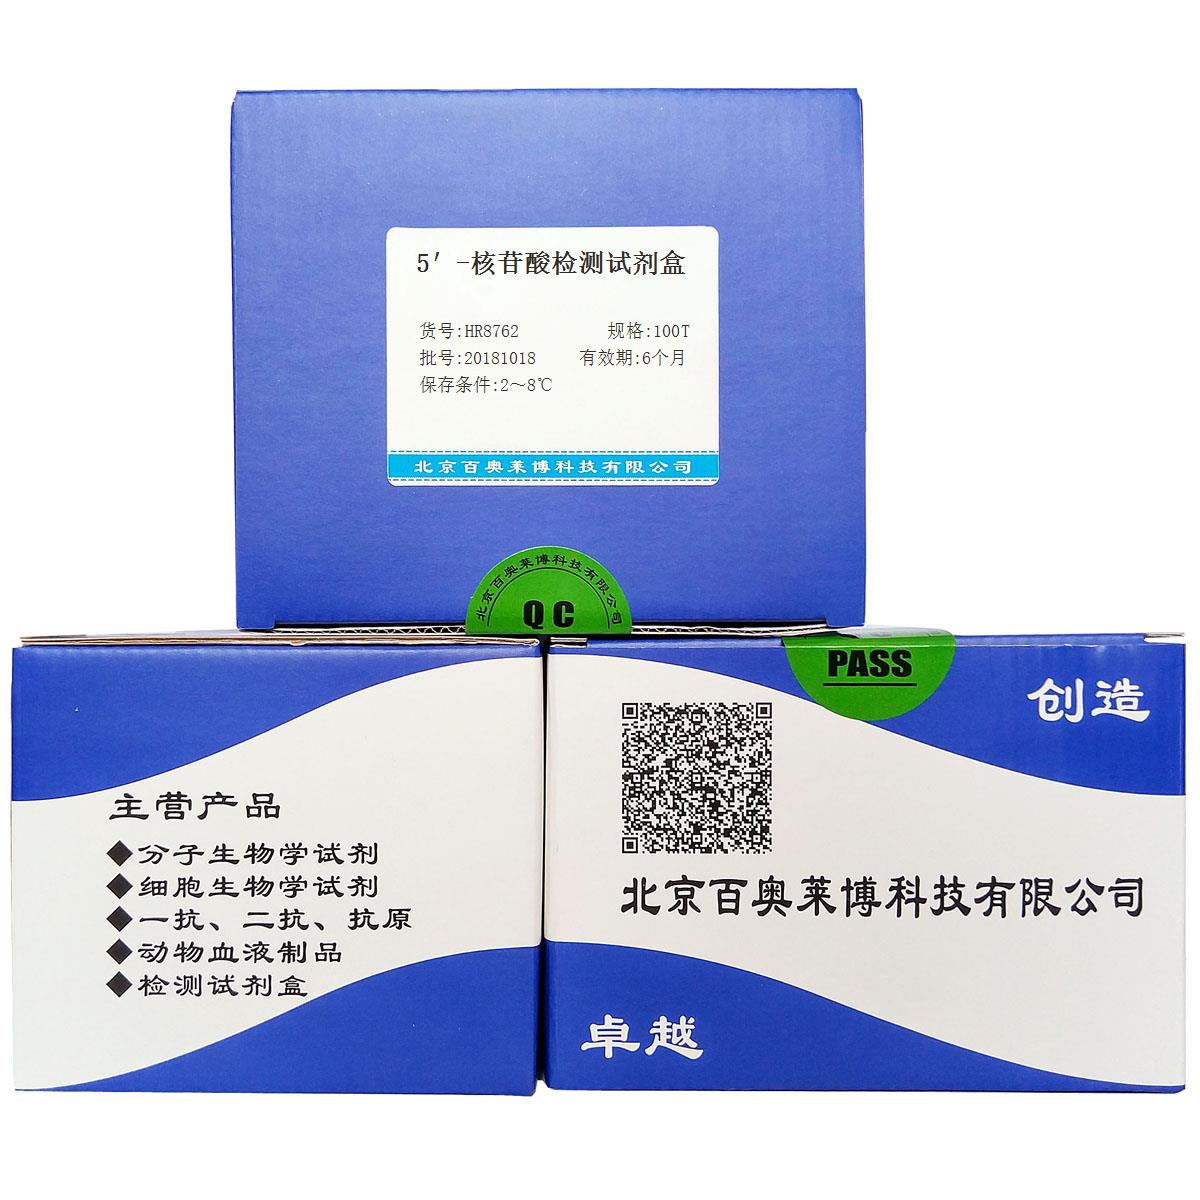 5′-核苷酸检测试剂盒